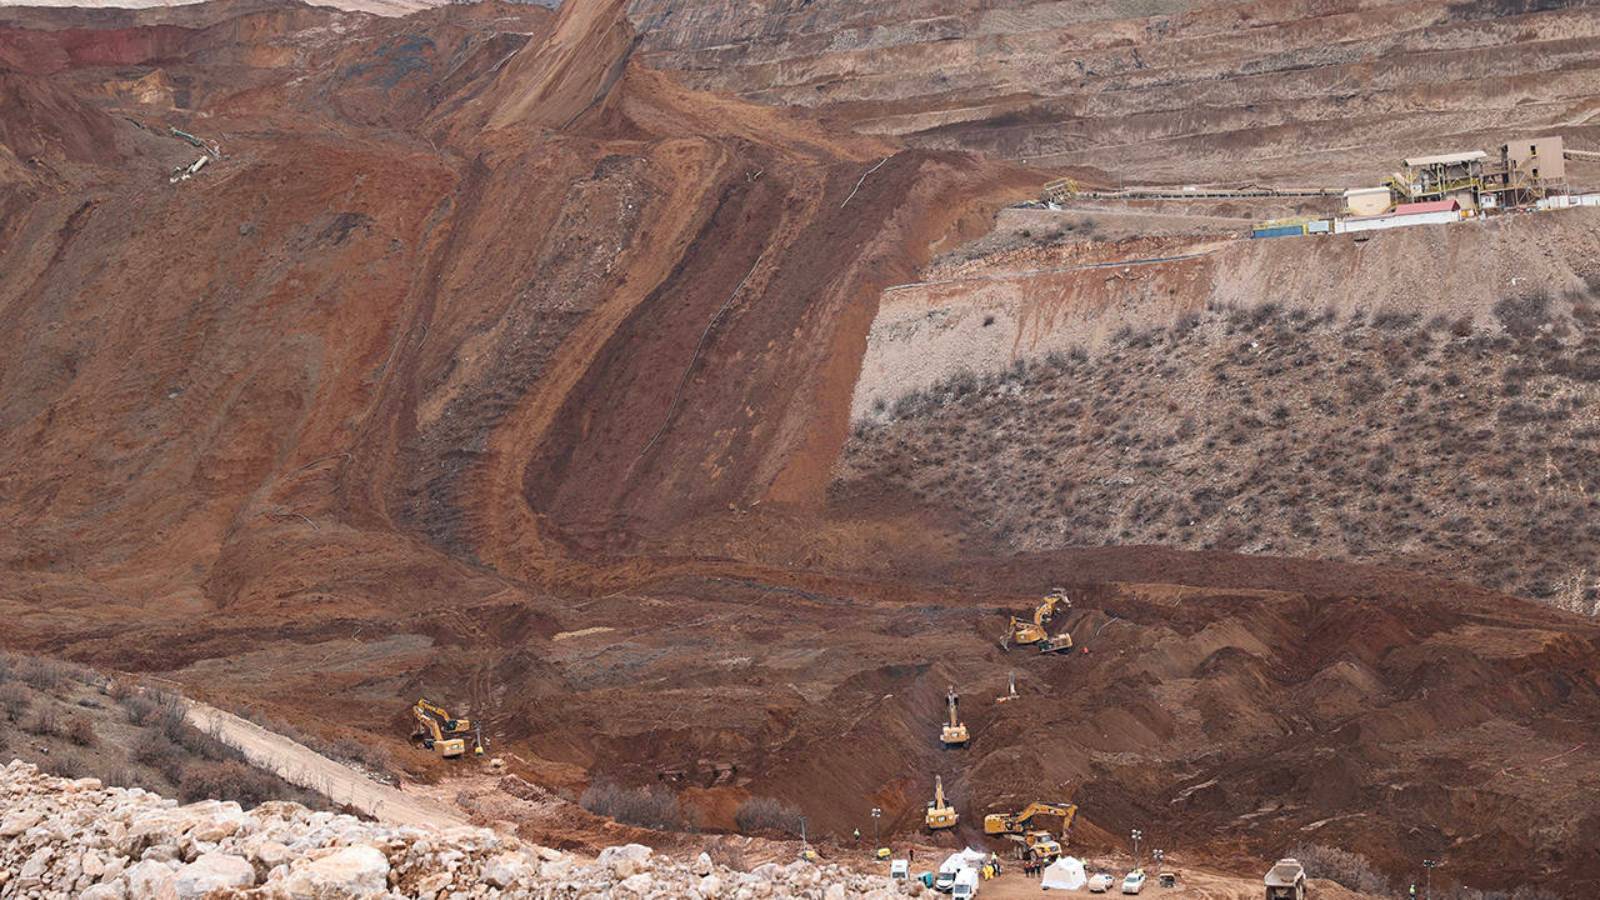 TBMM İliç Maden Kazasını Araştırma Komisyonu Erzincan'da | AKP'li Uslu: Çevresel etkiler anlamında olumsuz bir duruma rastlanmadı ama kurumlarımız teyakkuzda 